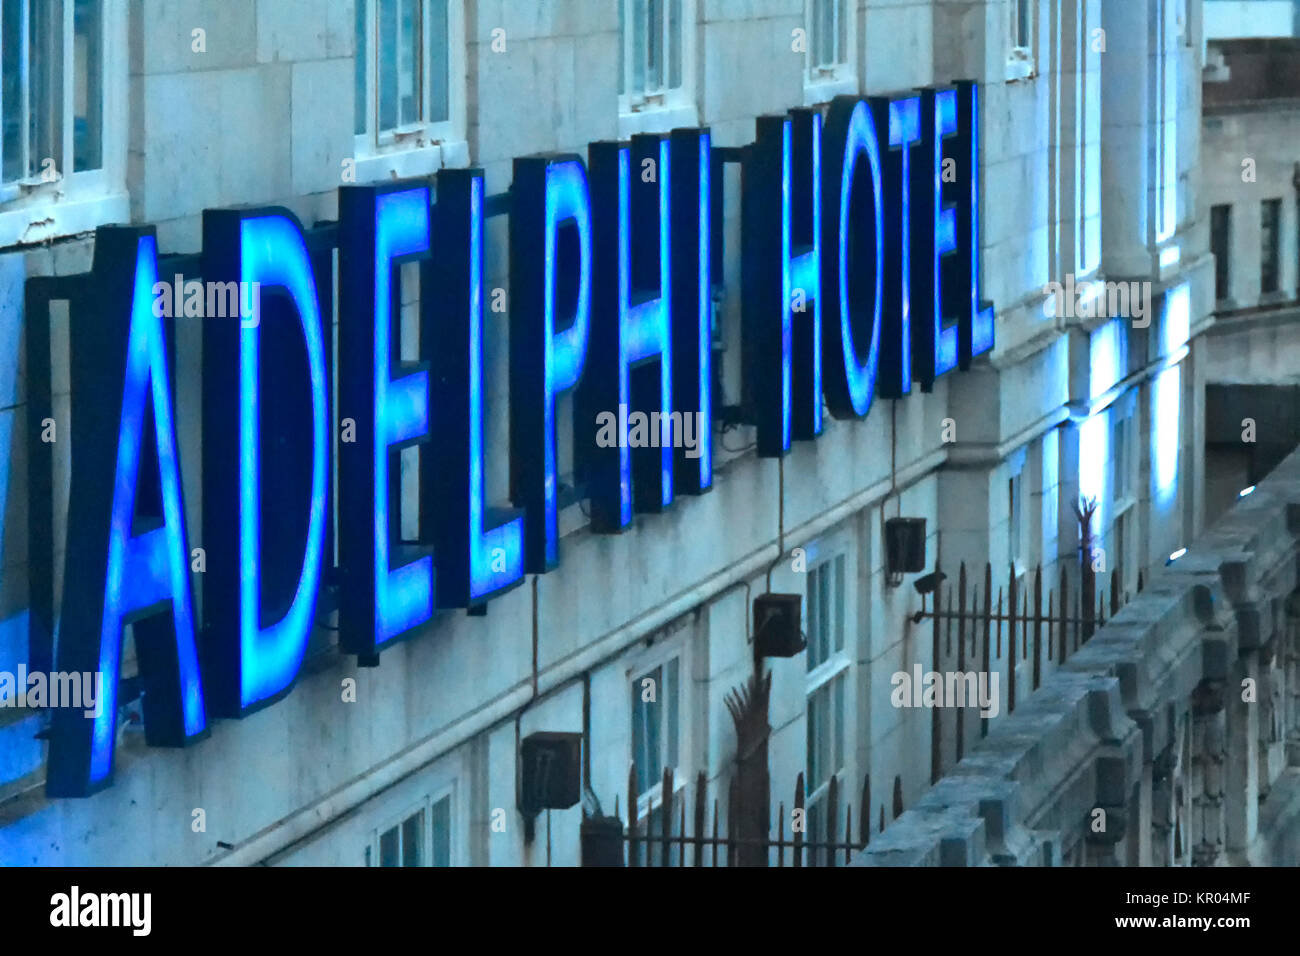 Blaue Leuchtreklame für Britannia Adelphi Hotel auf externen Hotel Wall knapp unter dem Dach in Innenstadtlage in Liverpool Merseyside England VEREINIGTES KÖNIGREICH Stockfoto